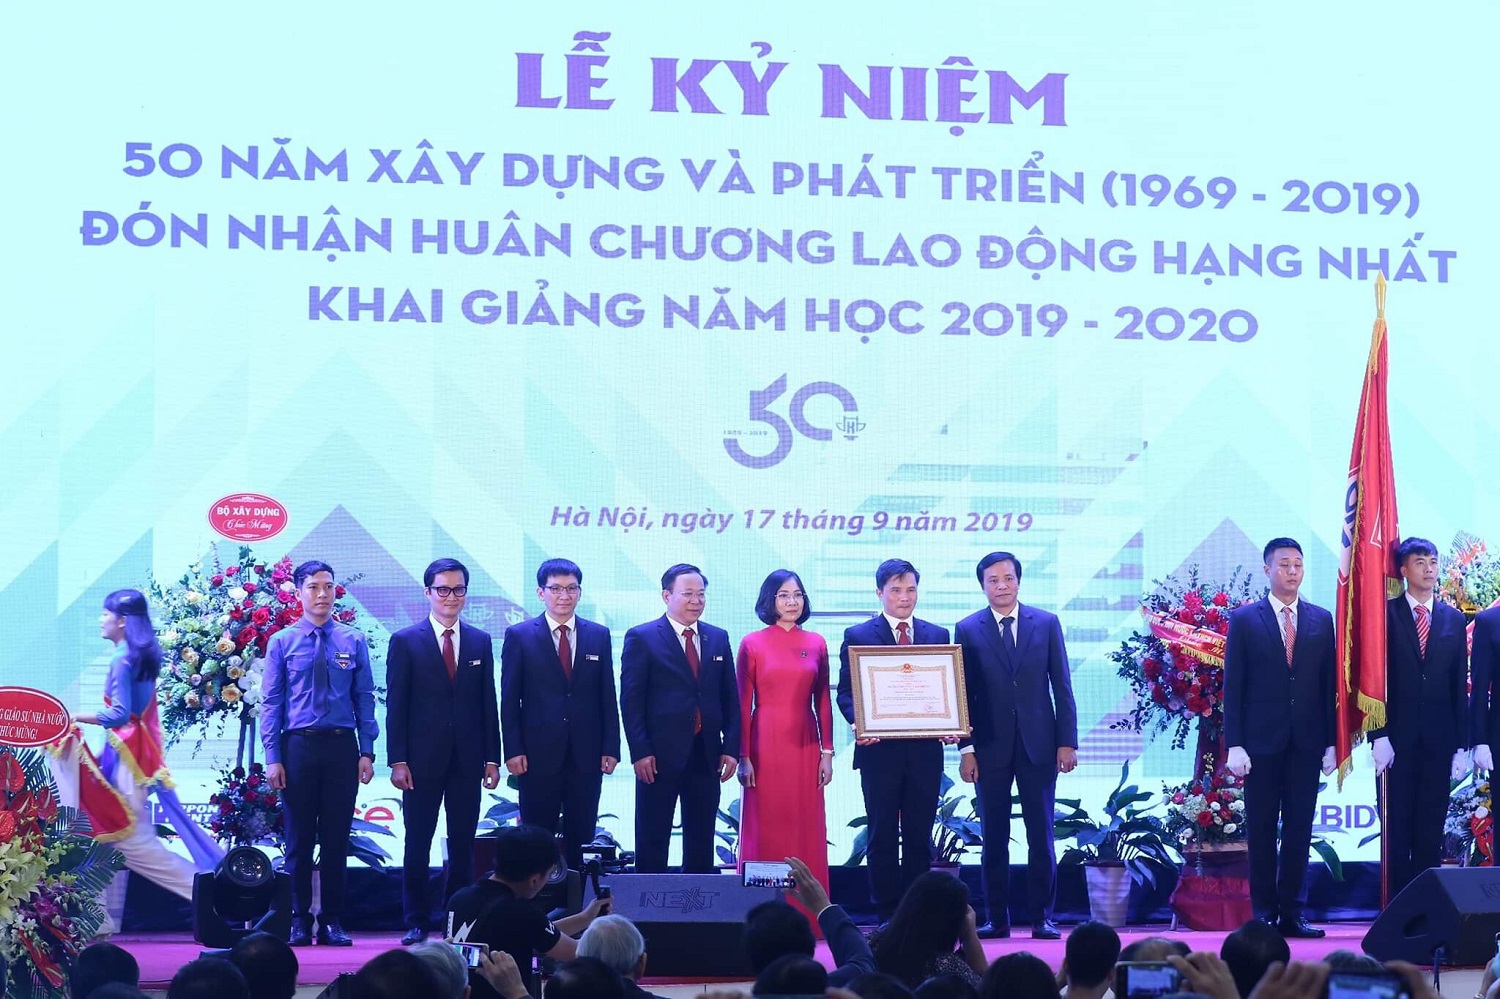 Phimsanpham.vn – quay phim kỷ niệm 50 năm thành lập công ty